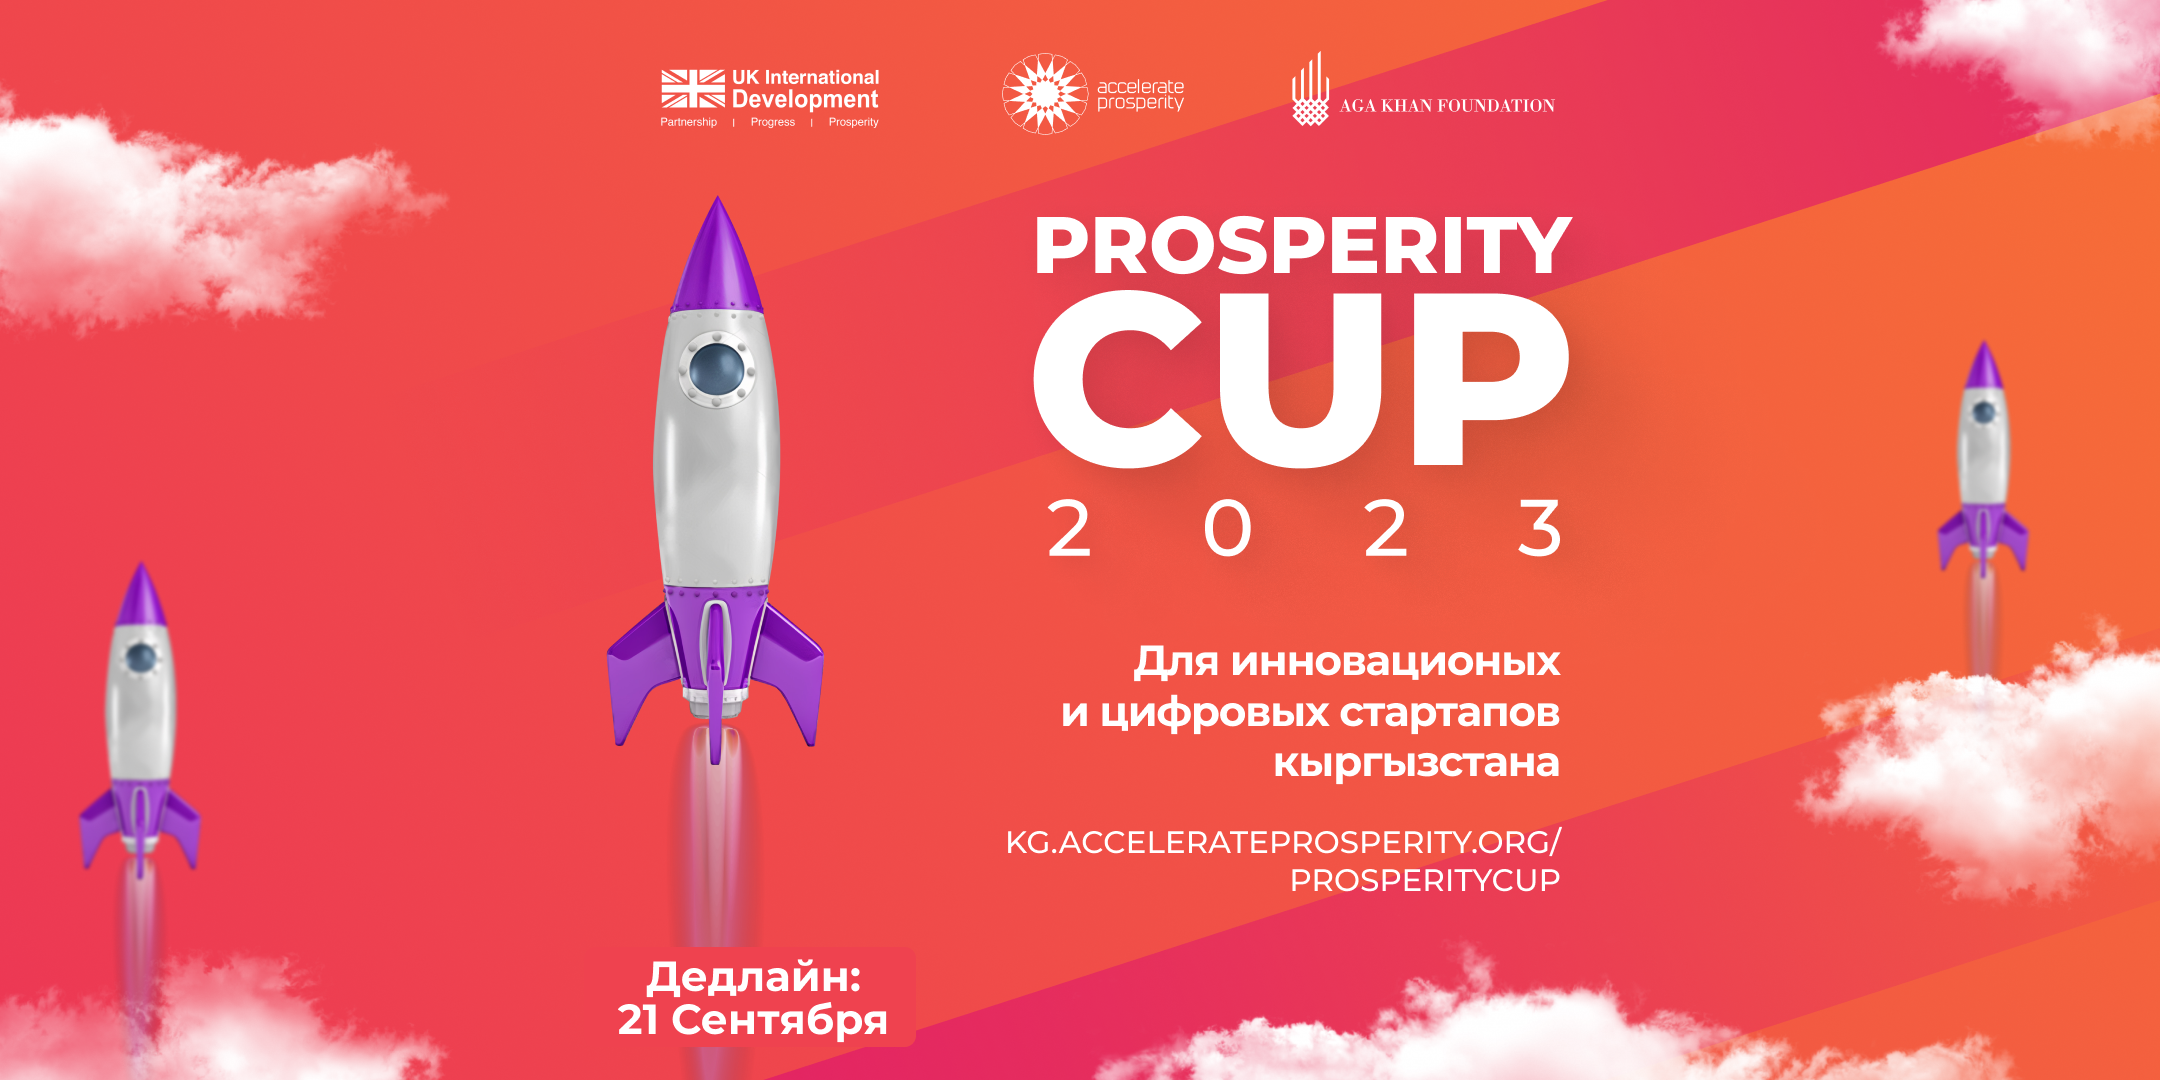 Начался прием заявок на ежегодный Prosperity Cup Kyrgyzstan